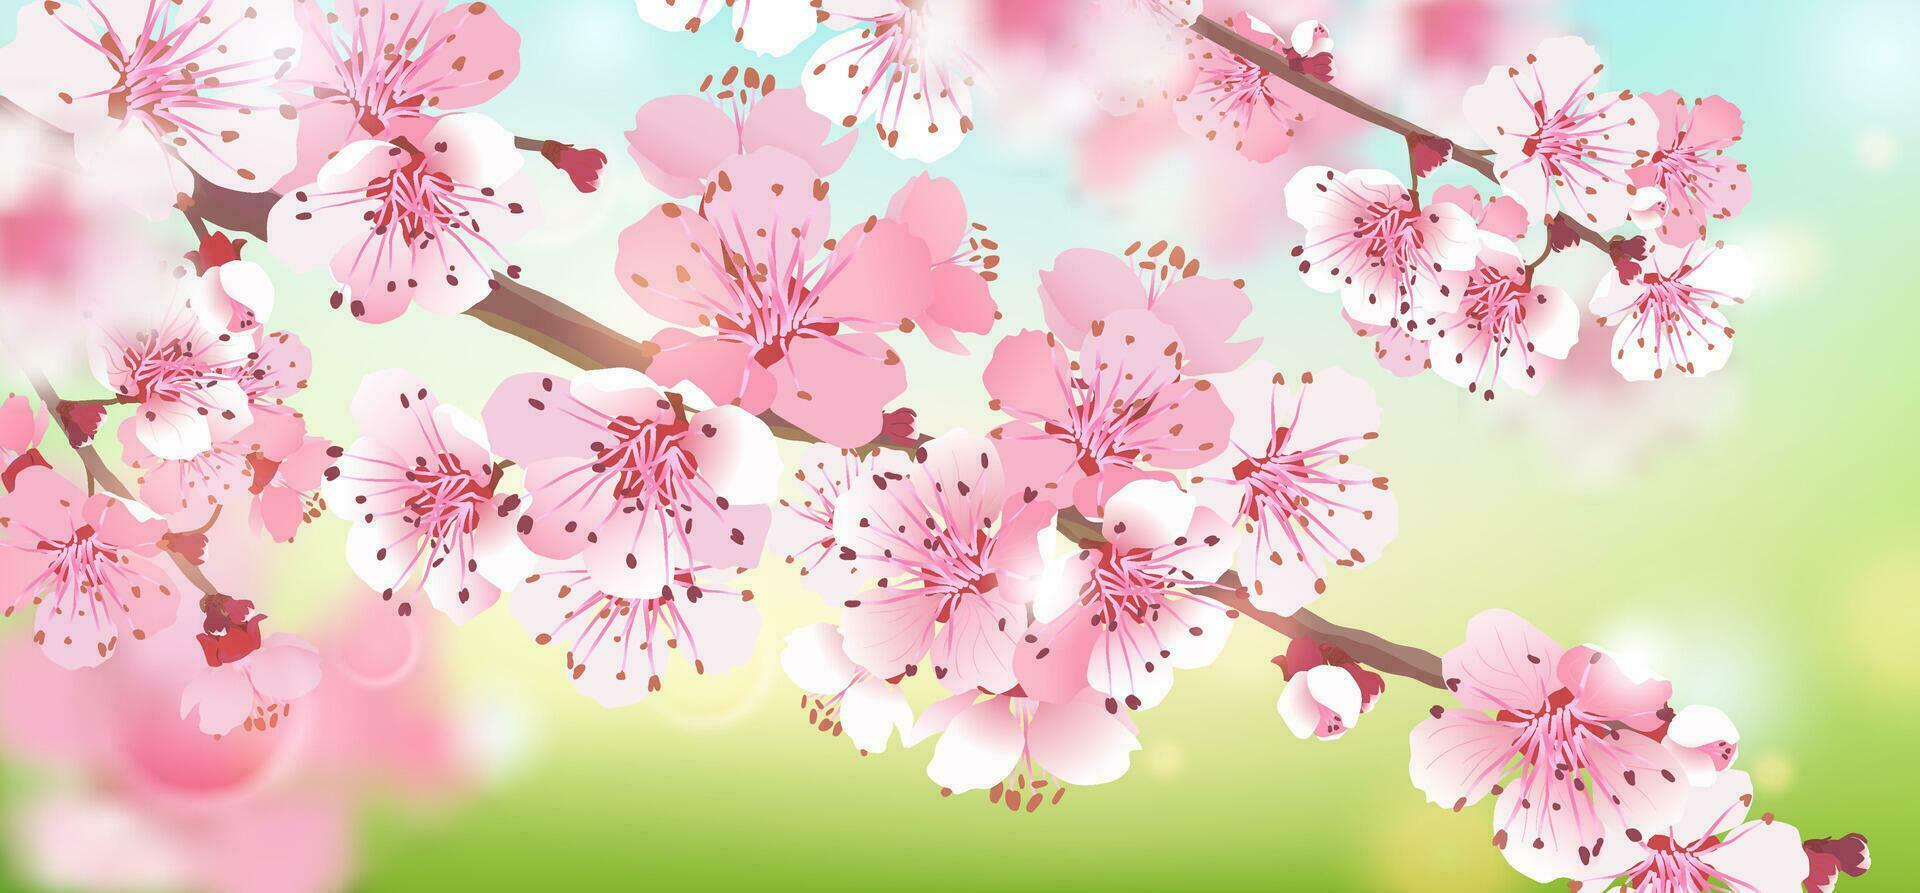 realistisch Afdeling van roze sakura Aan een blauw groen achtergrond. kers bloesem is een symbool van liefde, de lente. vector illustratie voor bruiloft uitnodigingen, achtergrond. ontwerp voor behang, bloem.